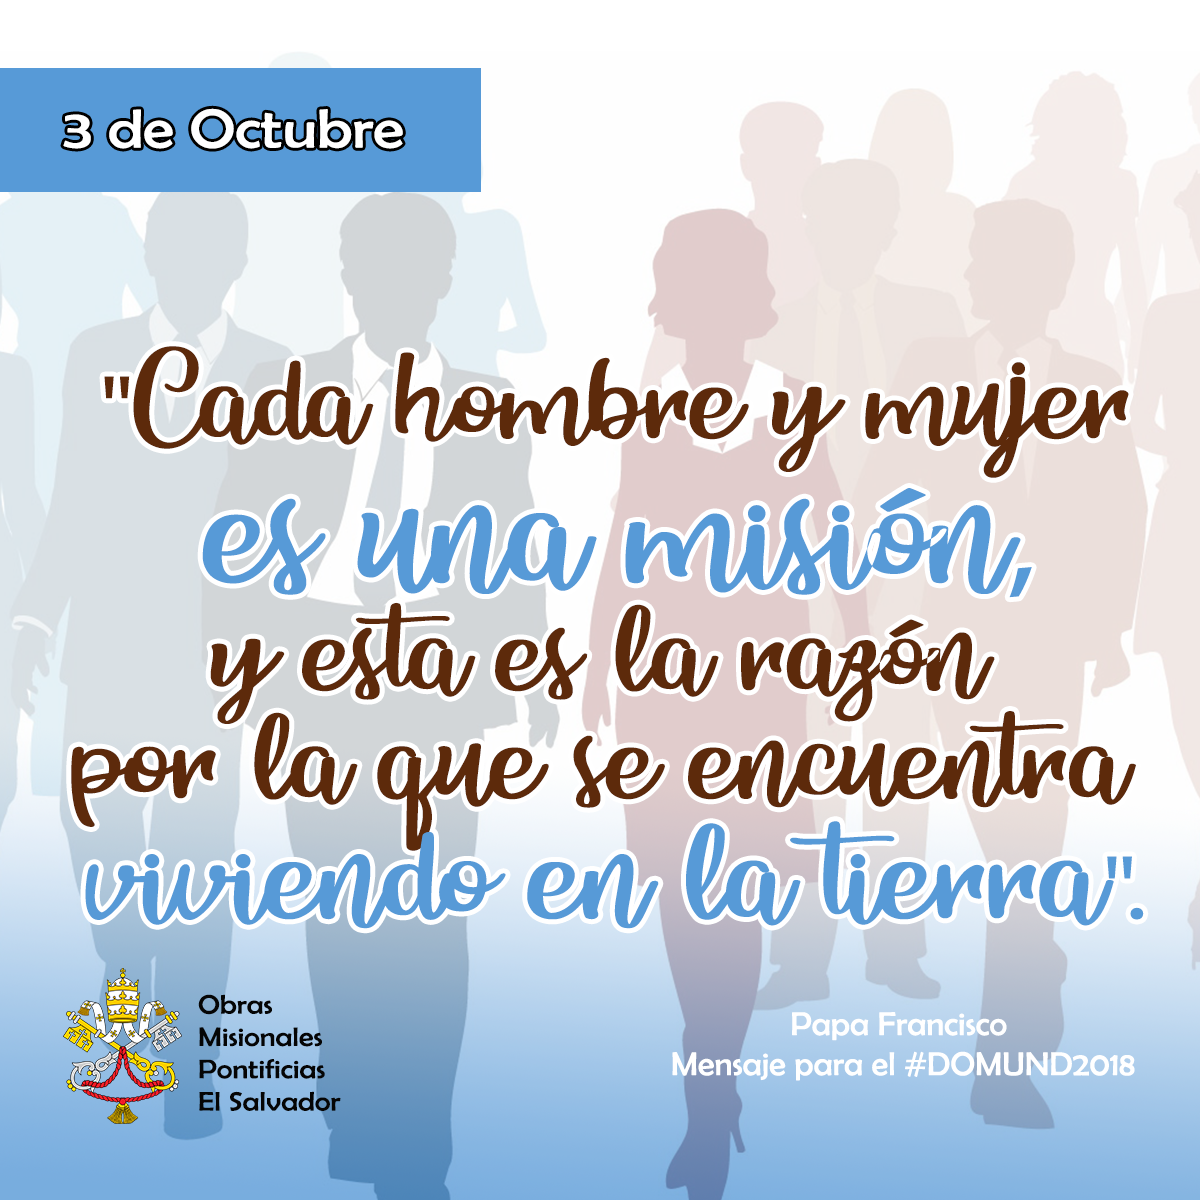 Frases #DOMUND2018 - El Salvador Misionero